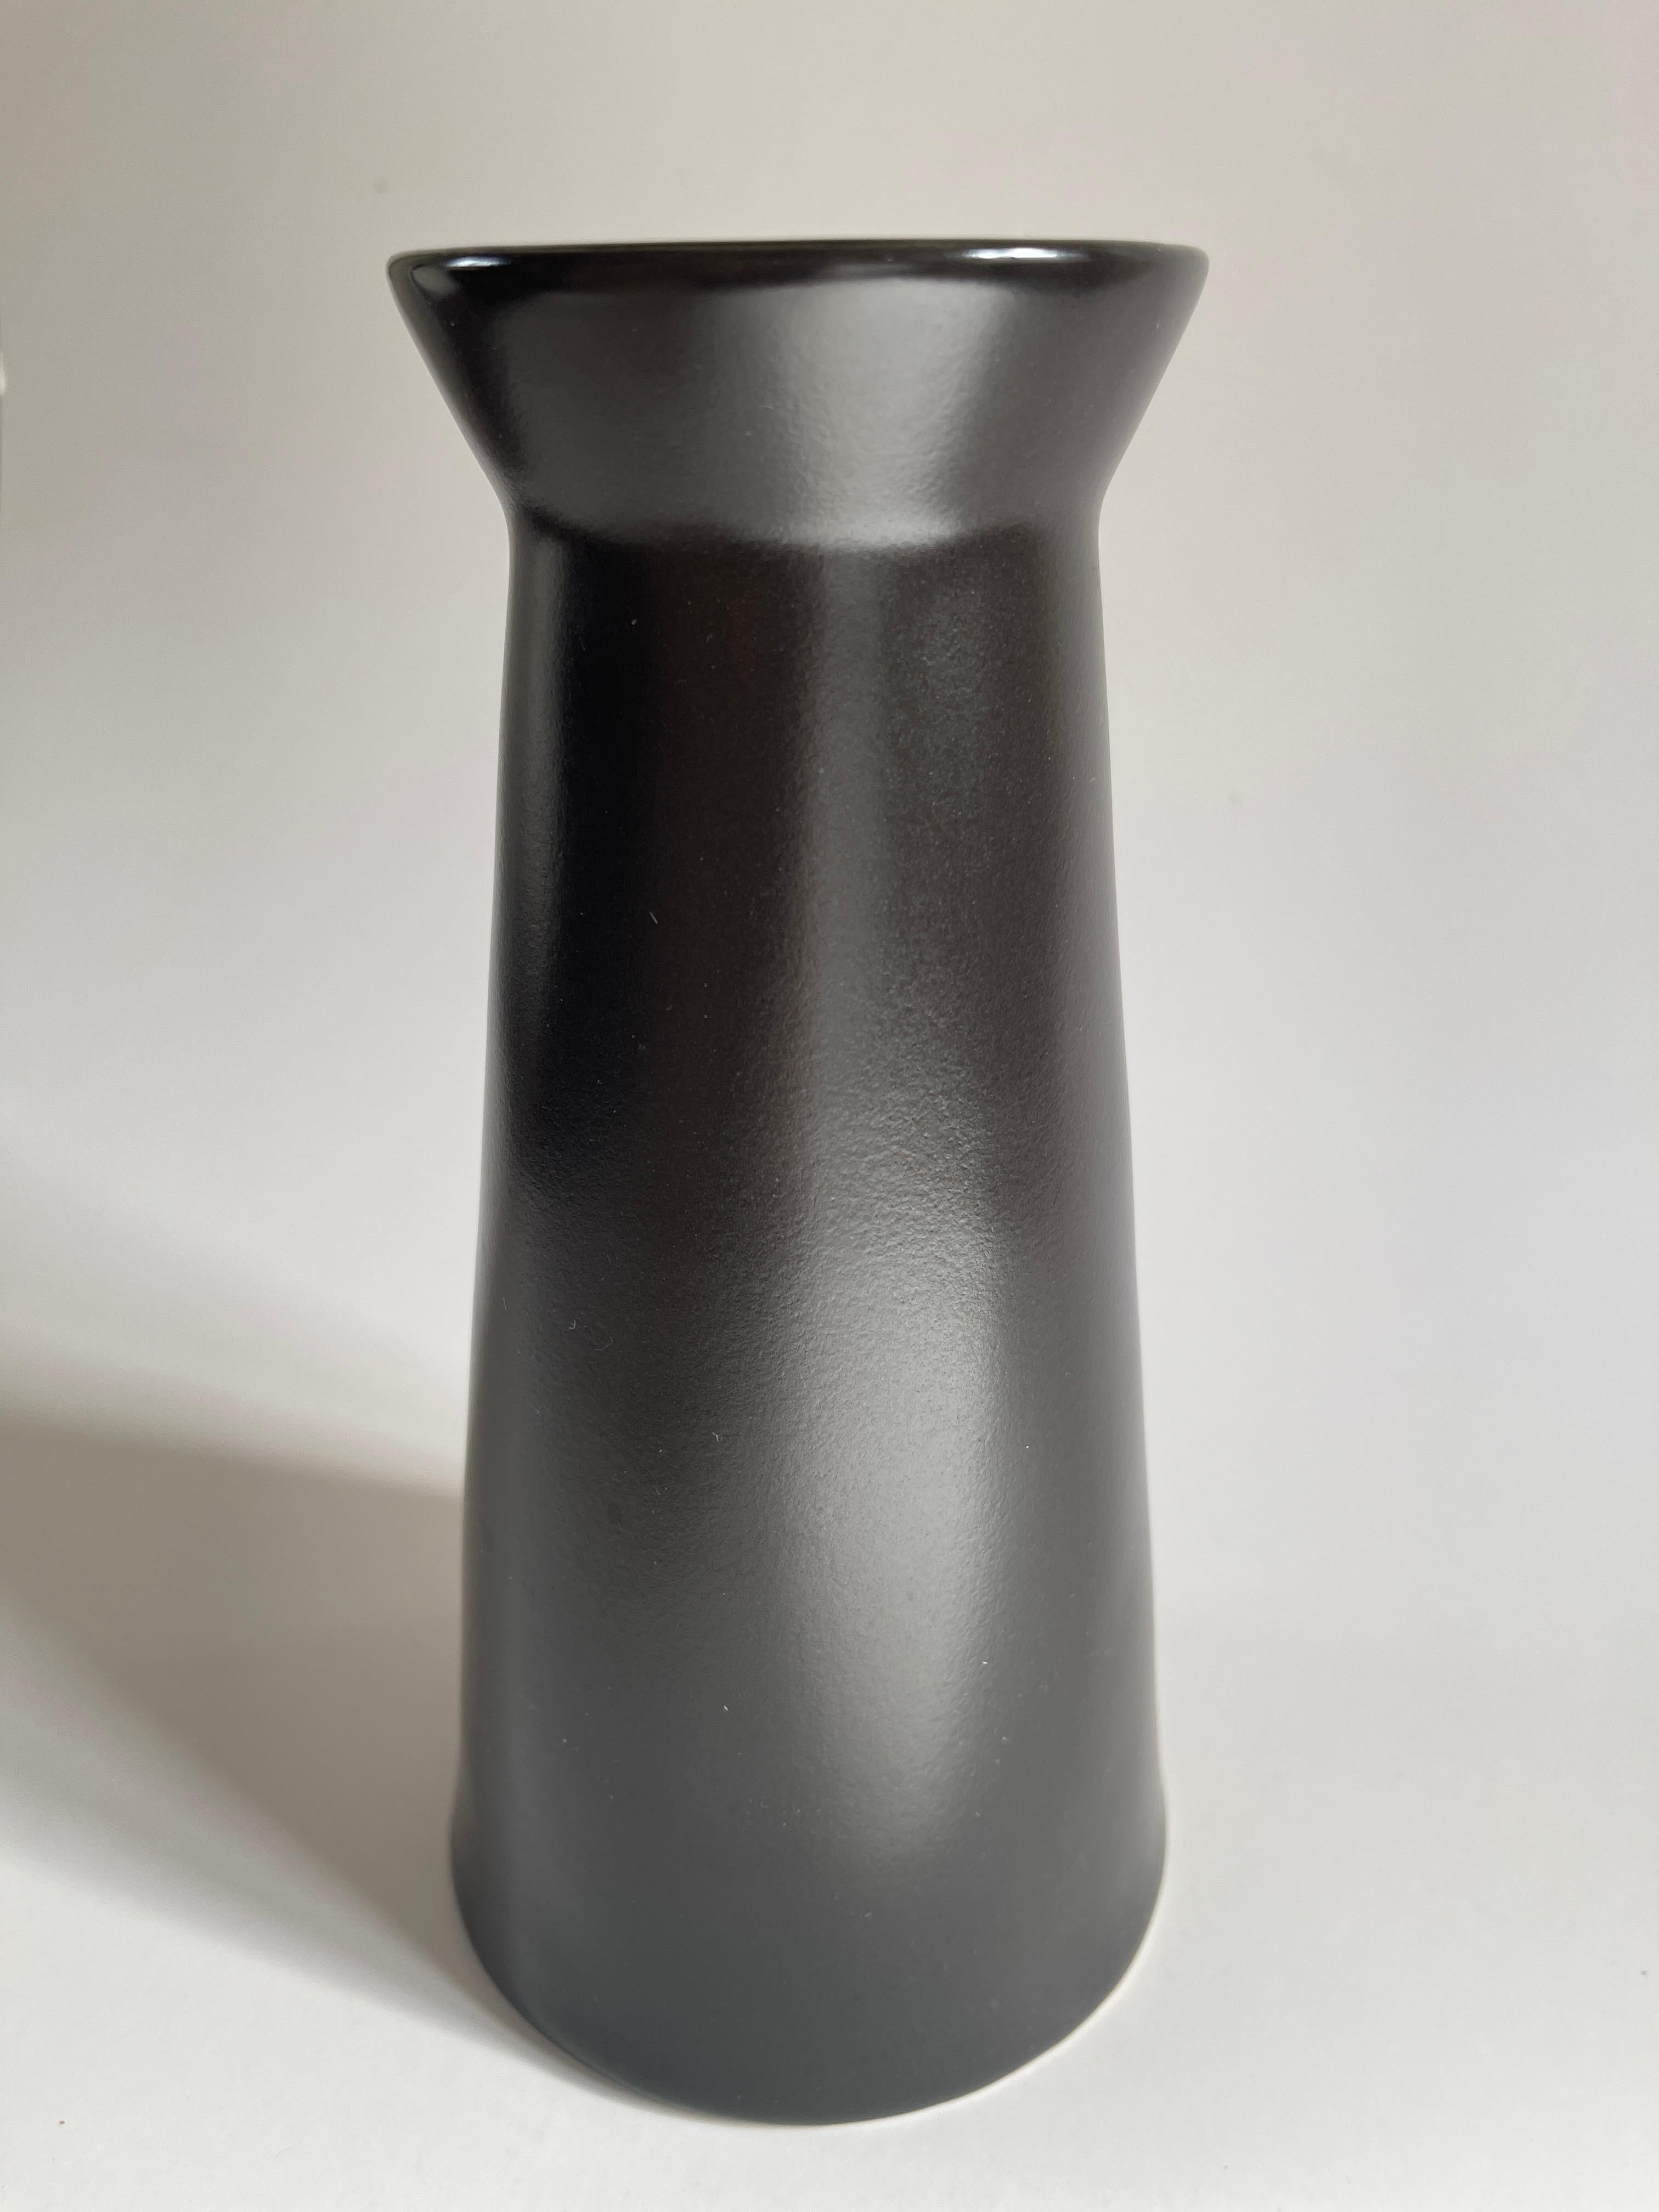 Paire de vases modernes suédois en grès à glaçure noire mate, avec une forme ouverte inspirée du Japon. Suède, c. 1990.